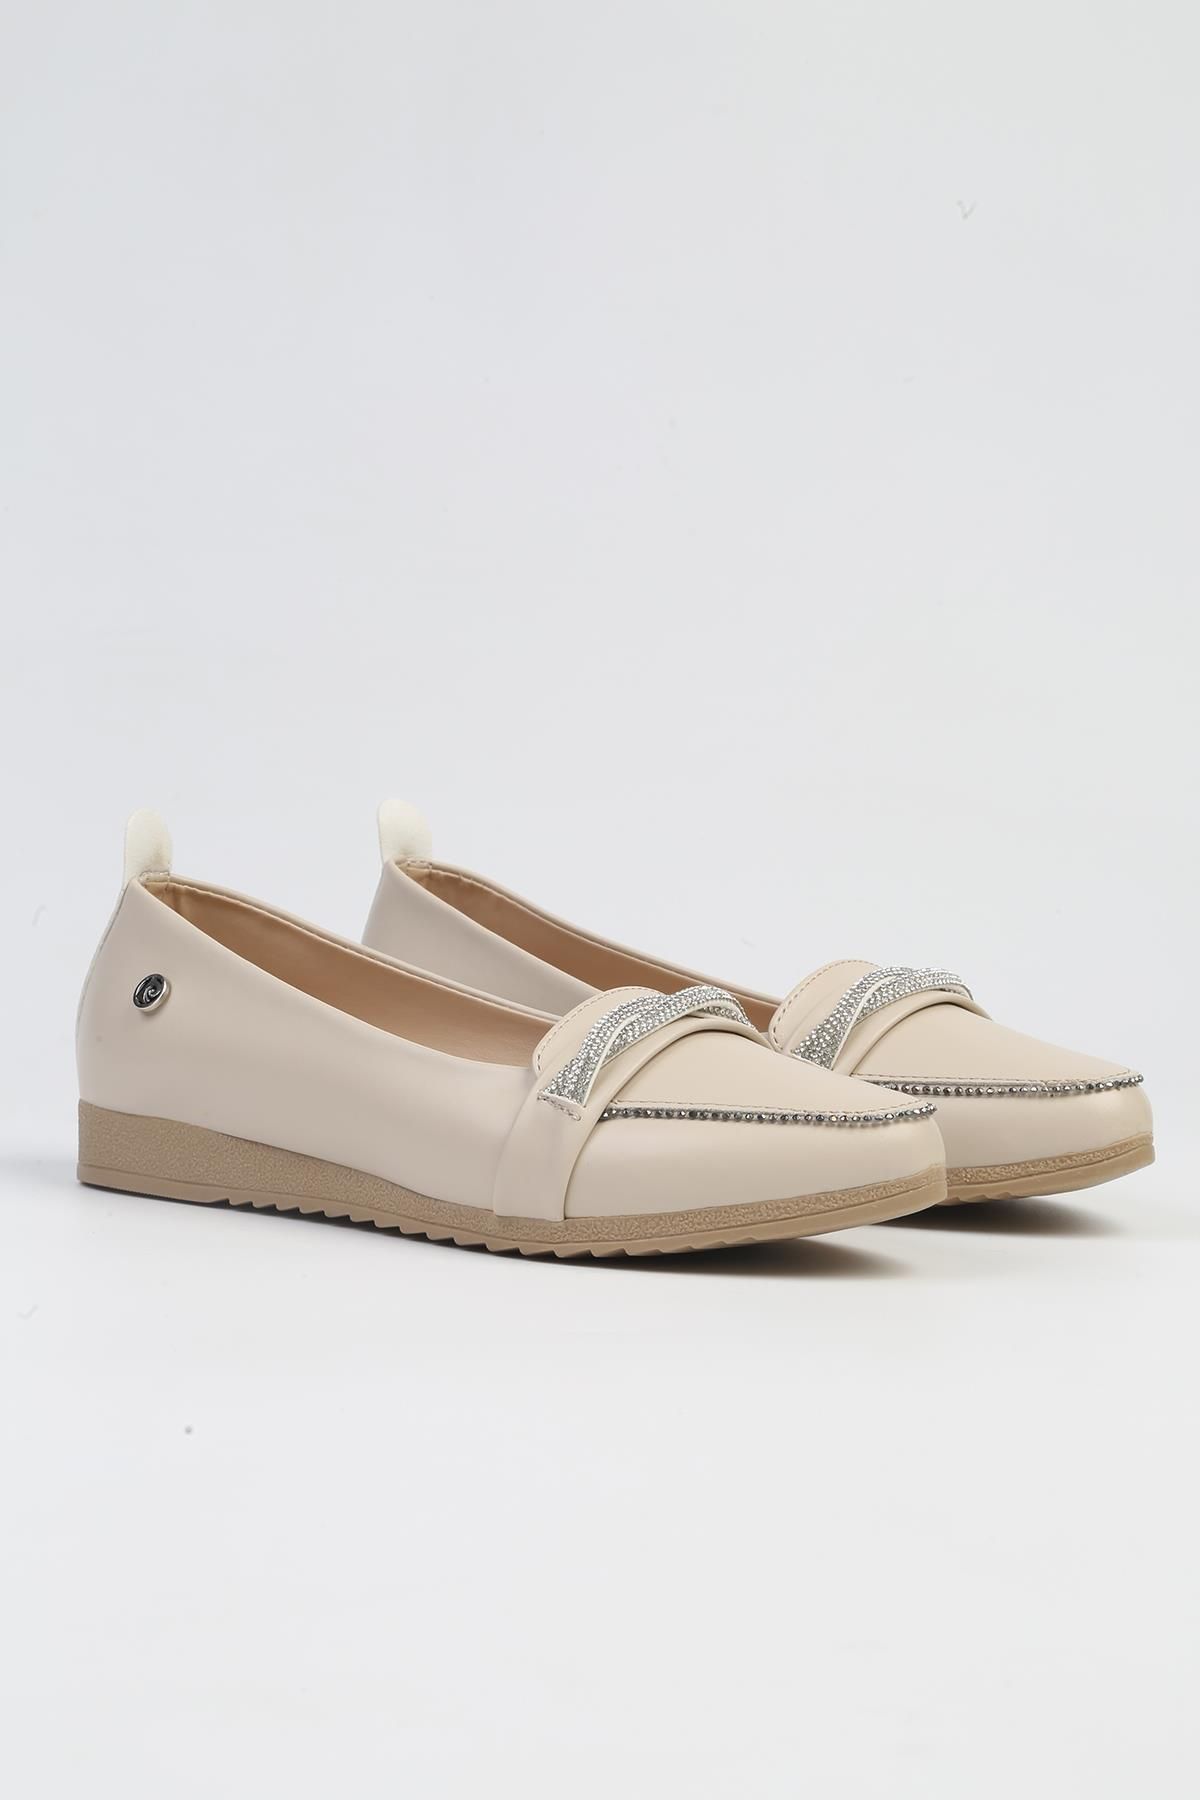 Pierre Cardin ® | PC-53017- 3962 Bej-Kadın Günlük Ayakkabı